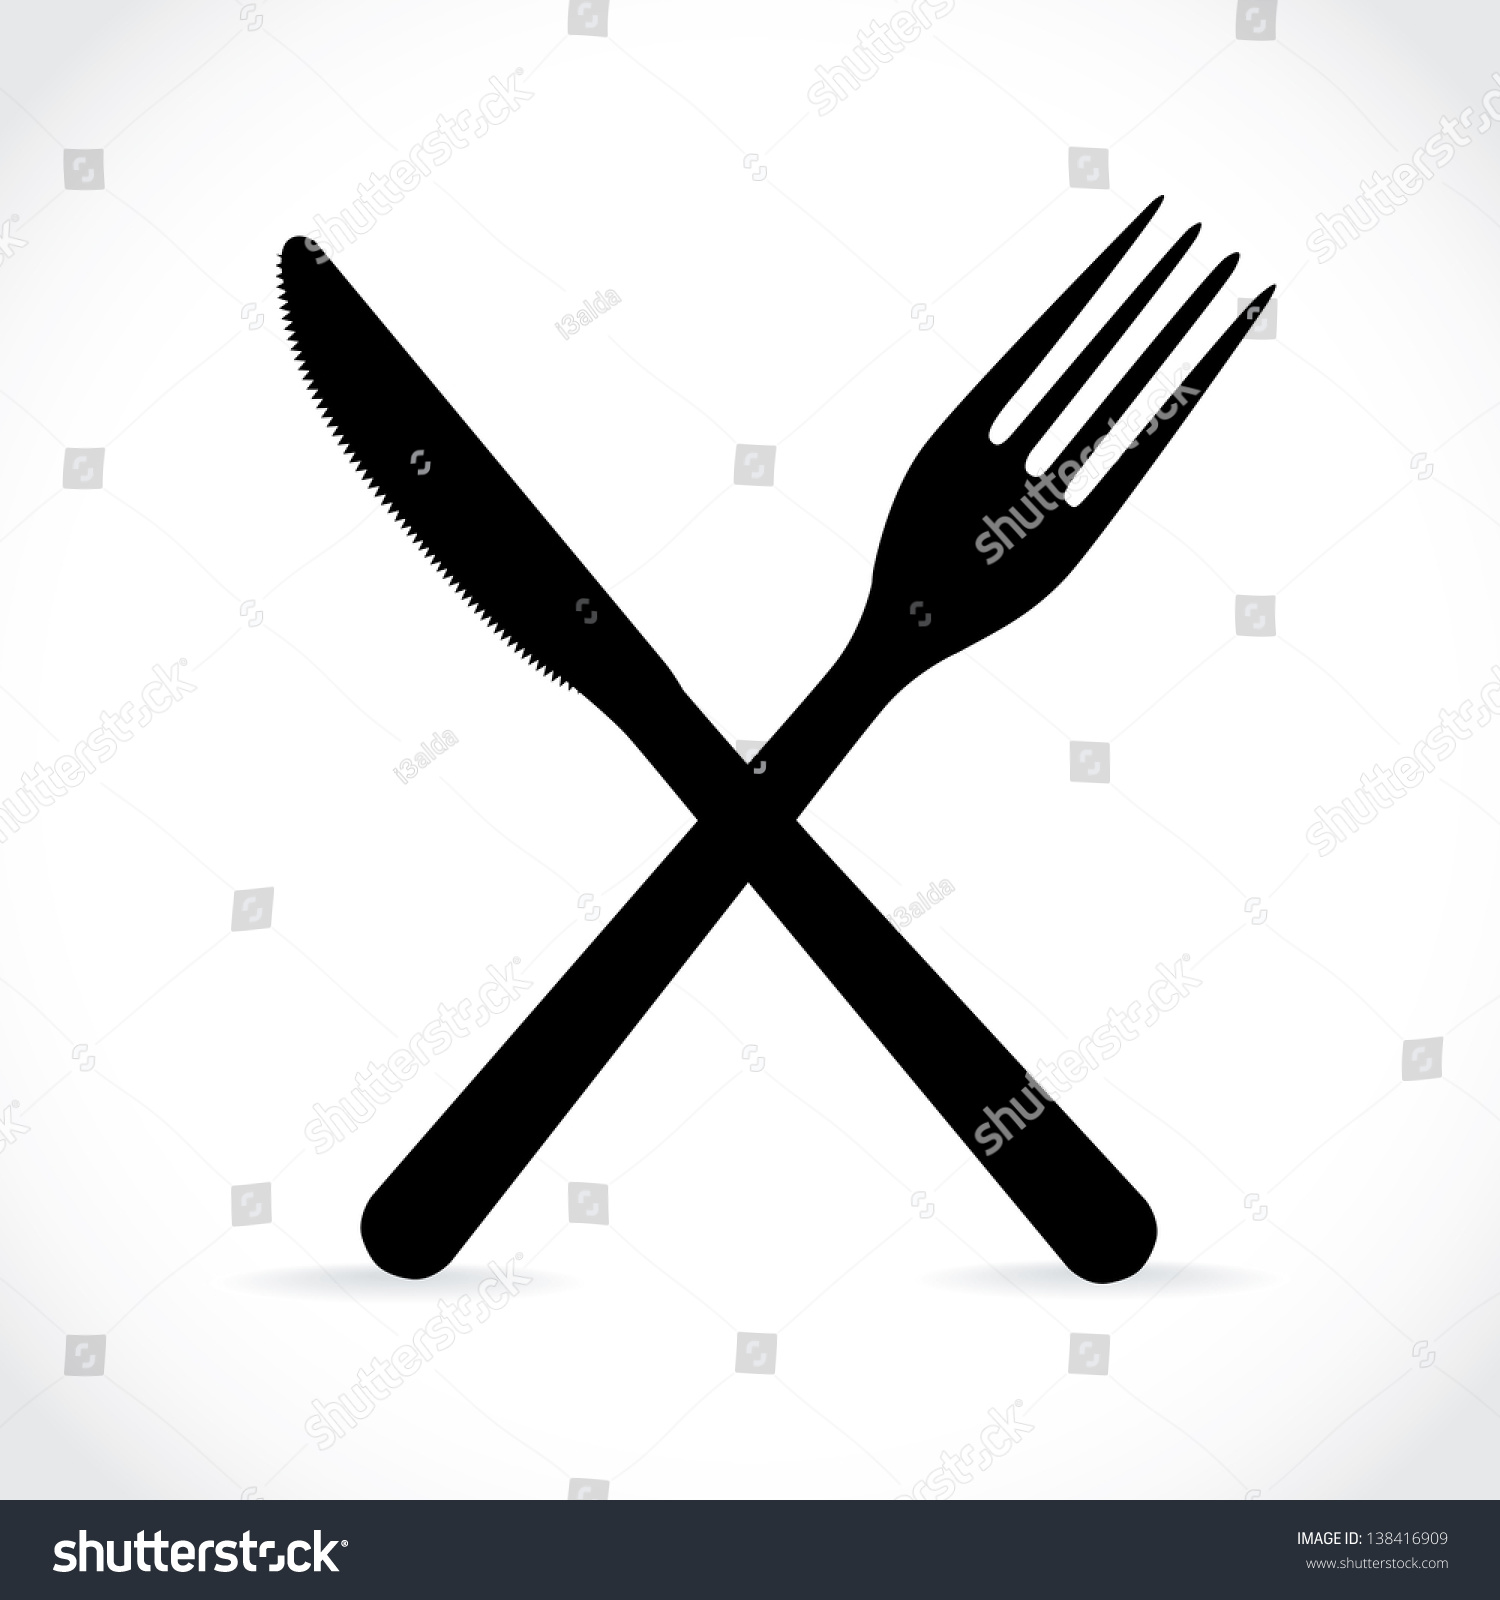 crossed fork over knife - illustration #138416909